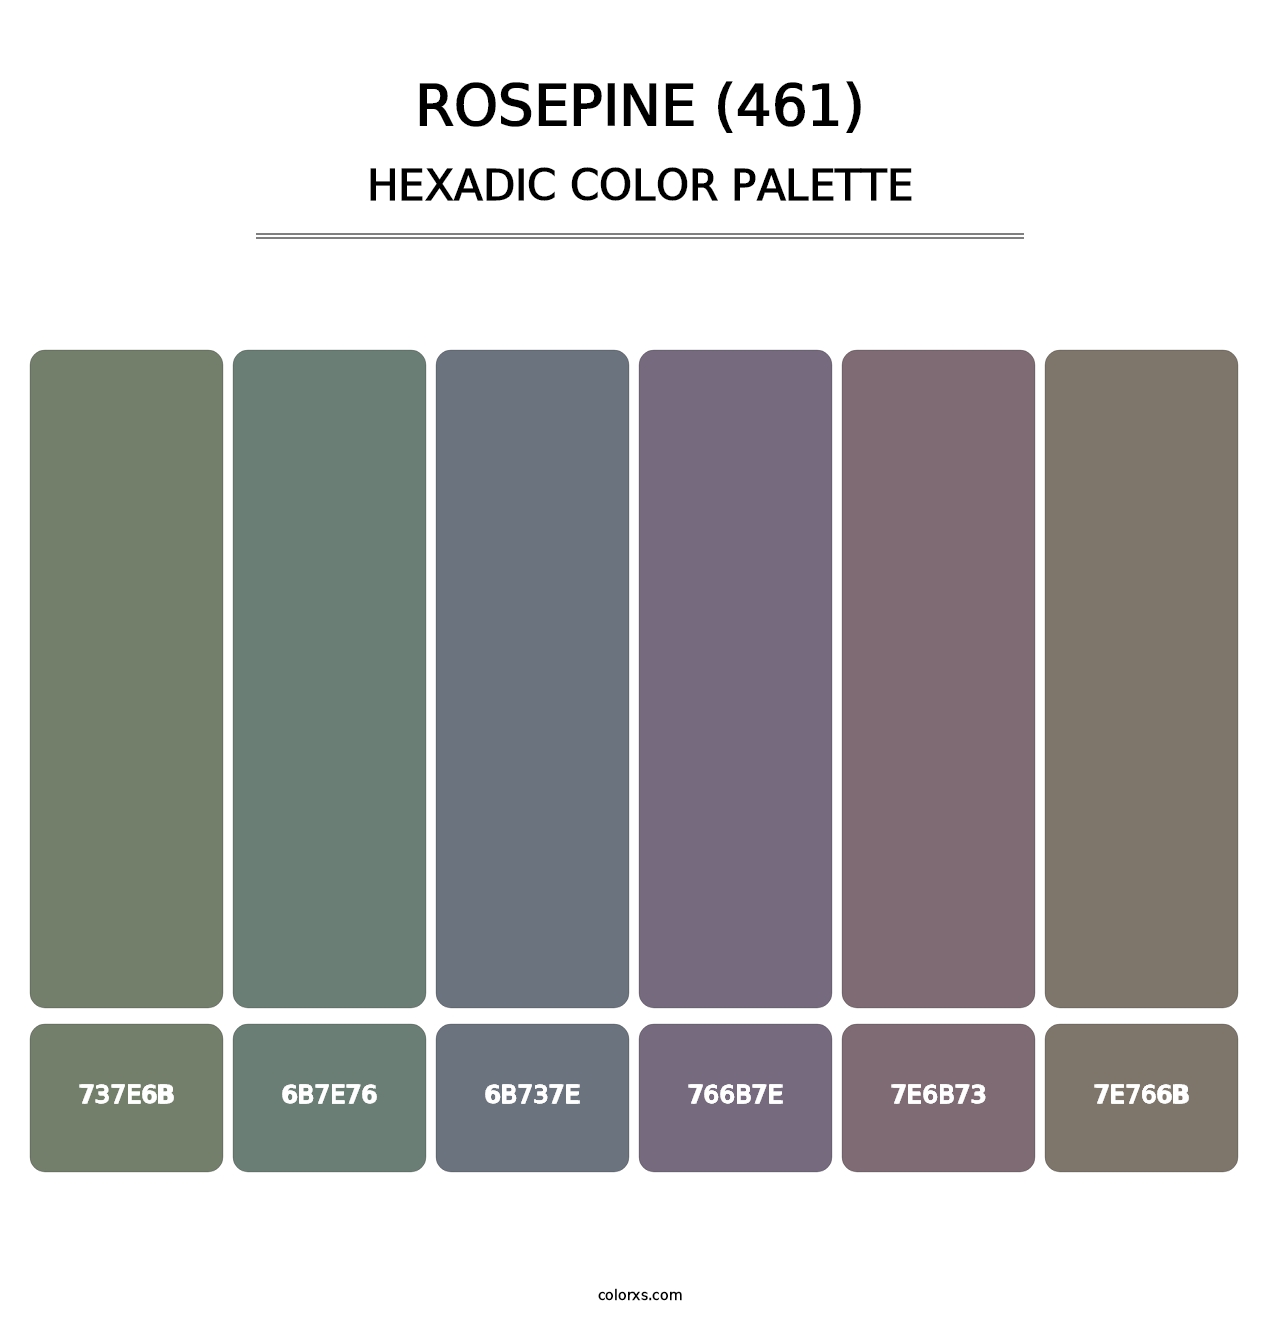 Rosepine (461) - Hexadic Color Palette